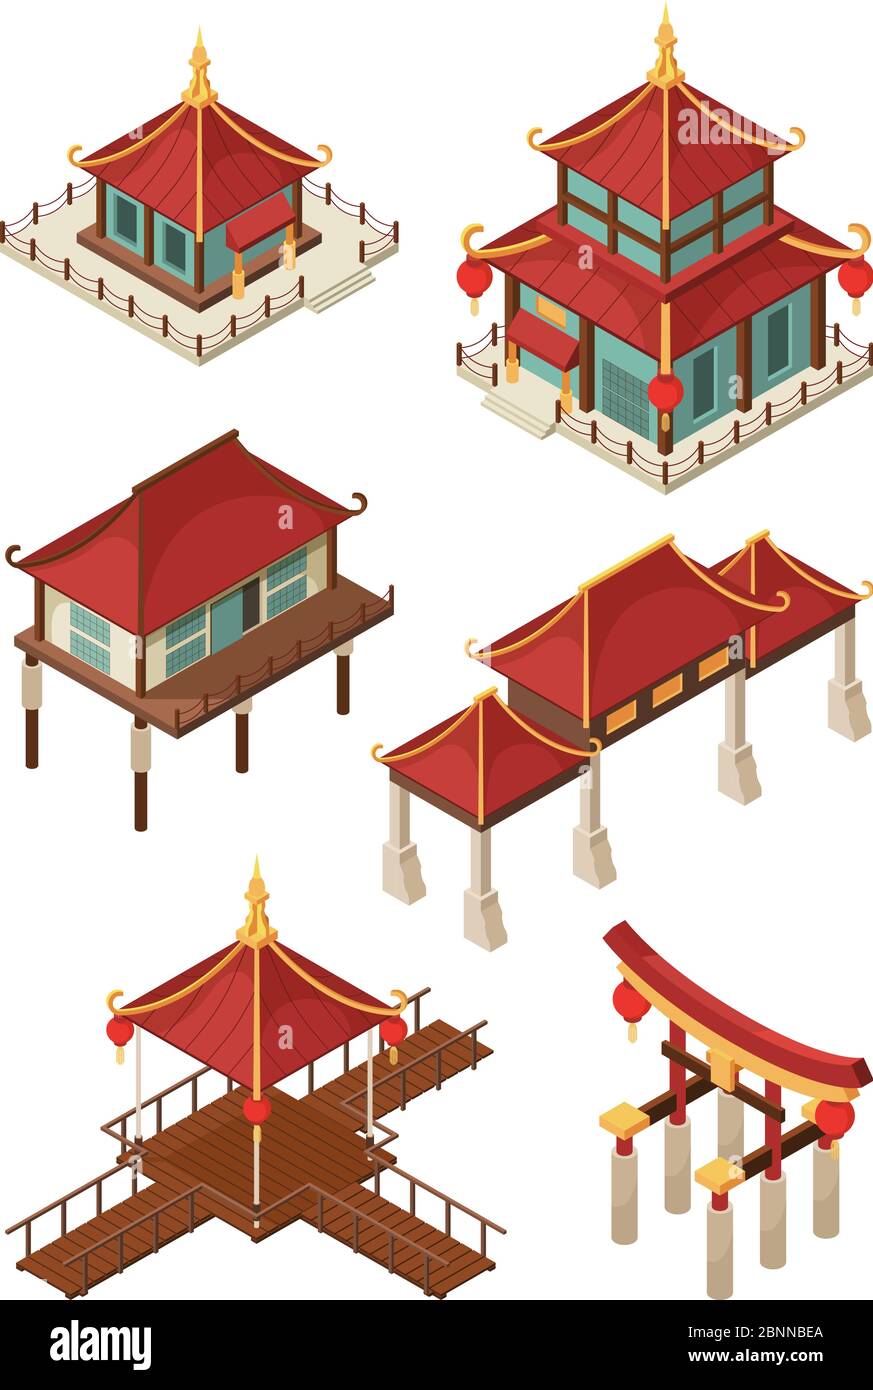 Asiatische Architektur isometrisch. Traditionelle chinesische und japan Häuser Gebäude Dach Vektor 3d-Illustrationen Stock Vektor